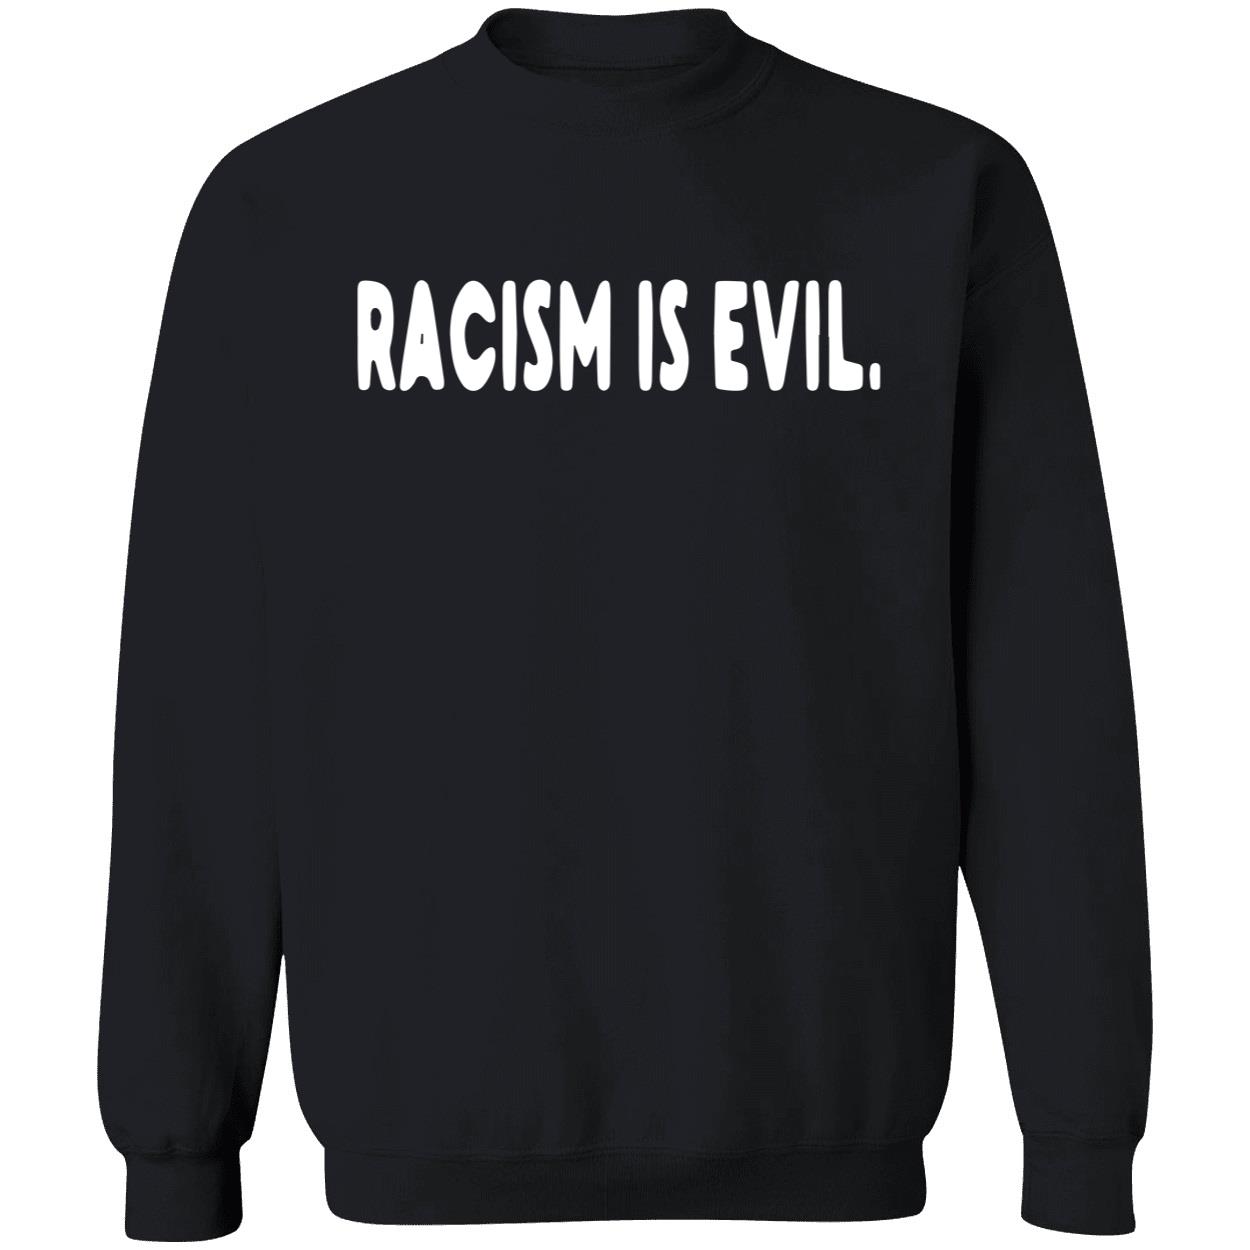 Racism is evil hoodie - Endastore.com